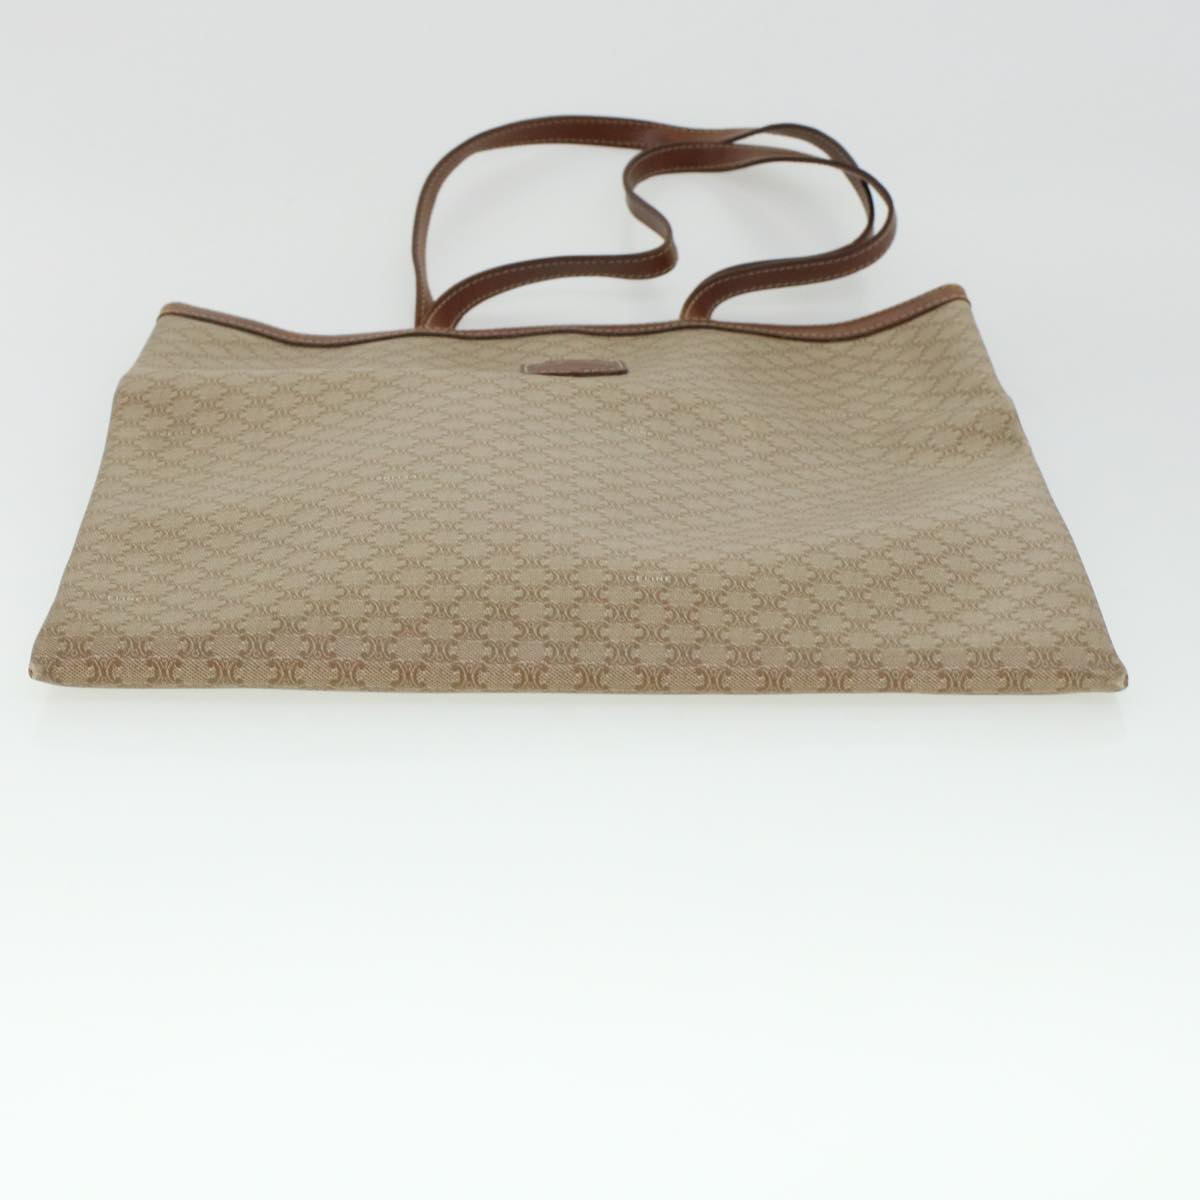 CELINE Macadam Canvas Shoulder Bag PVC Leather Beige Auth 45023